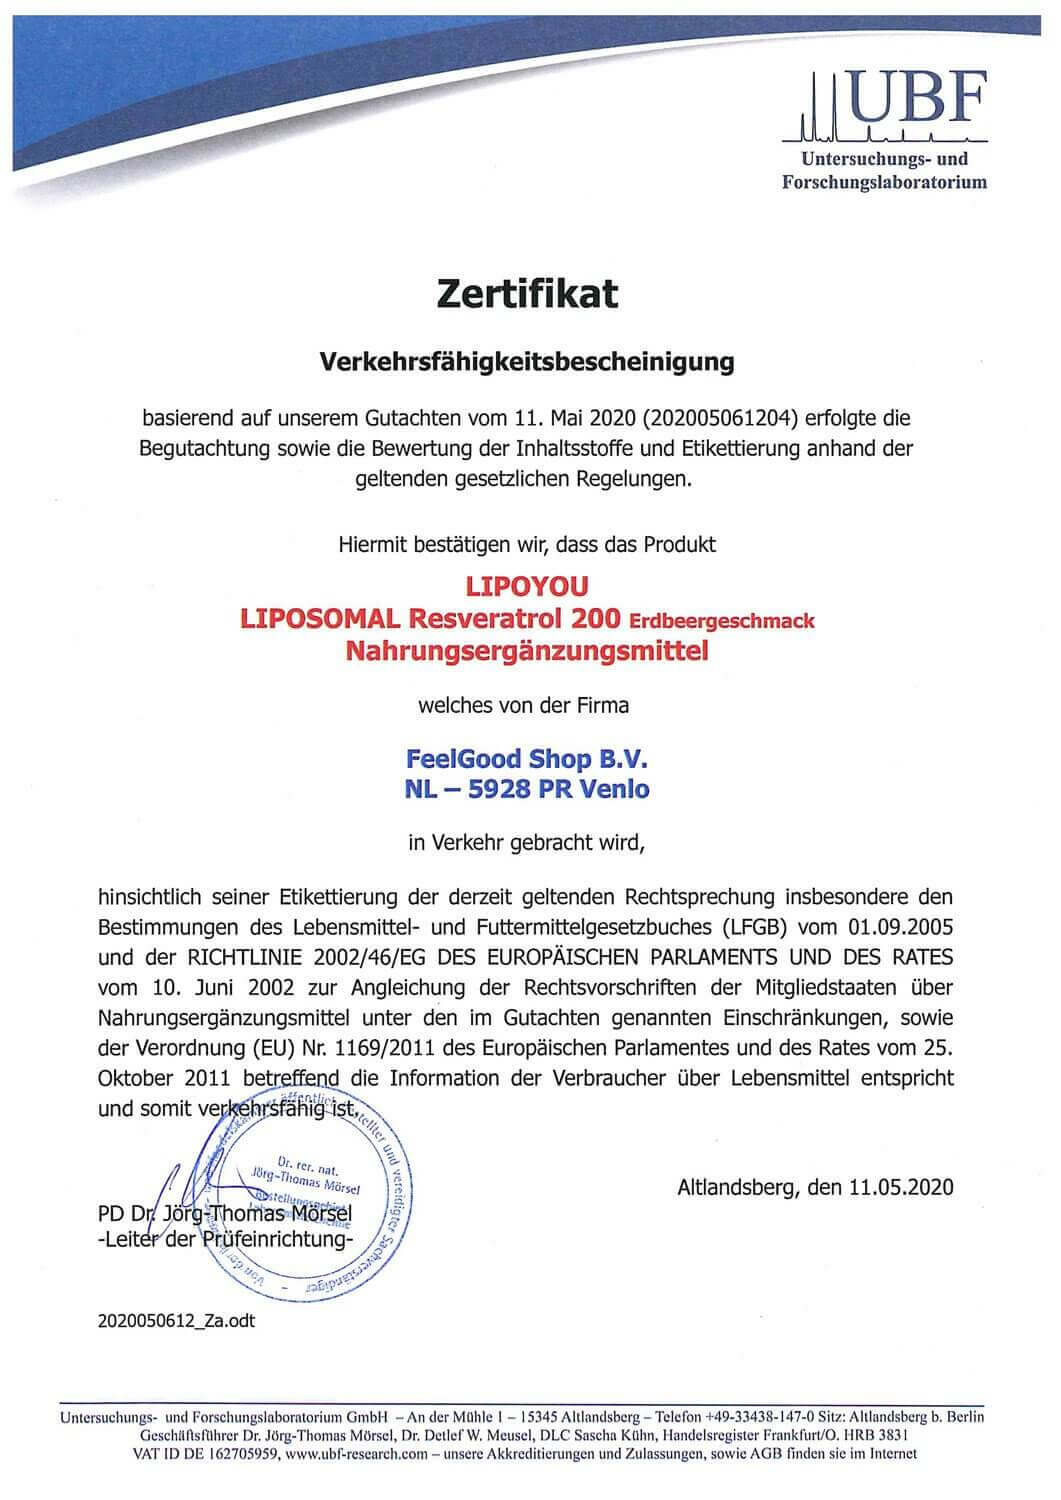 LIPOSOMAL Resveratrol 200 Zertifikat